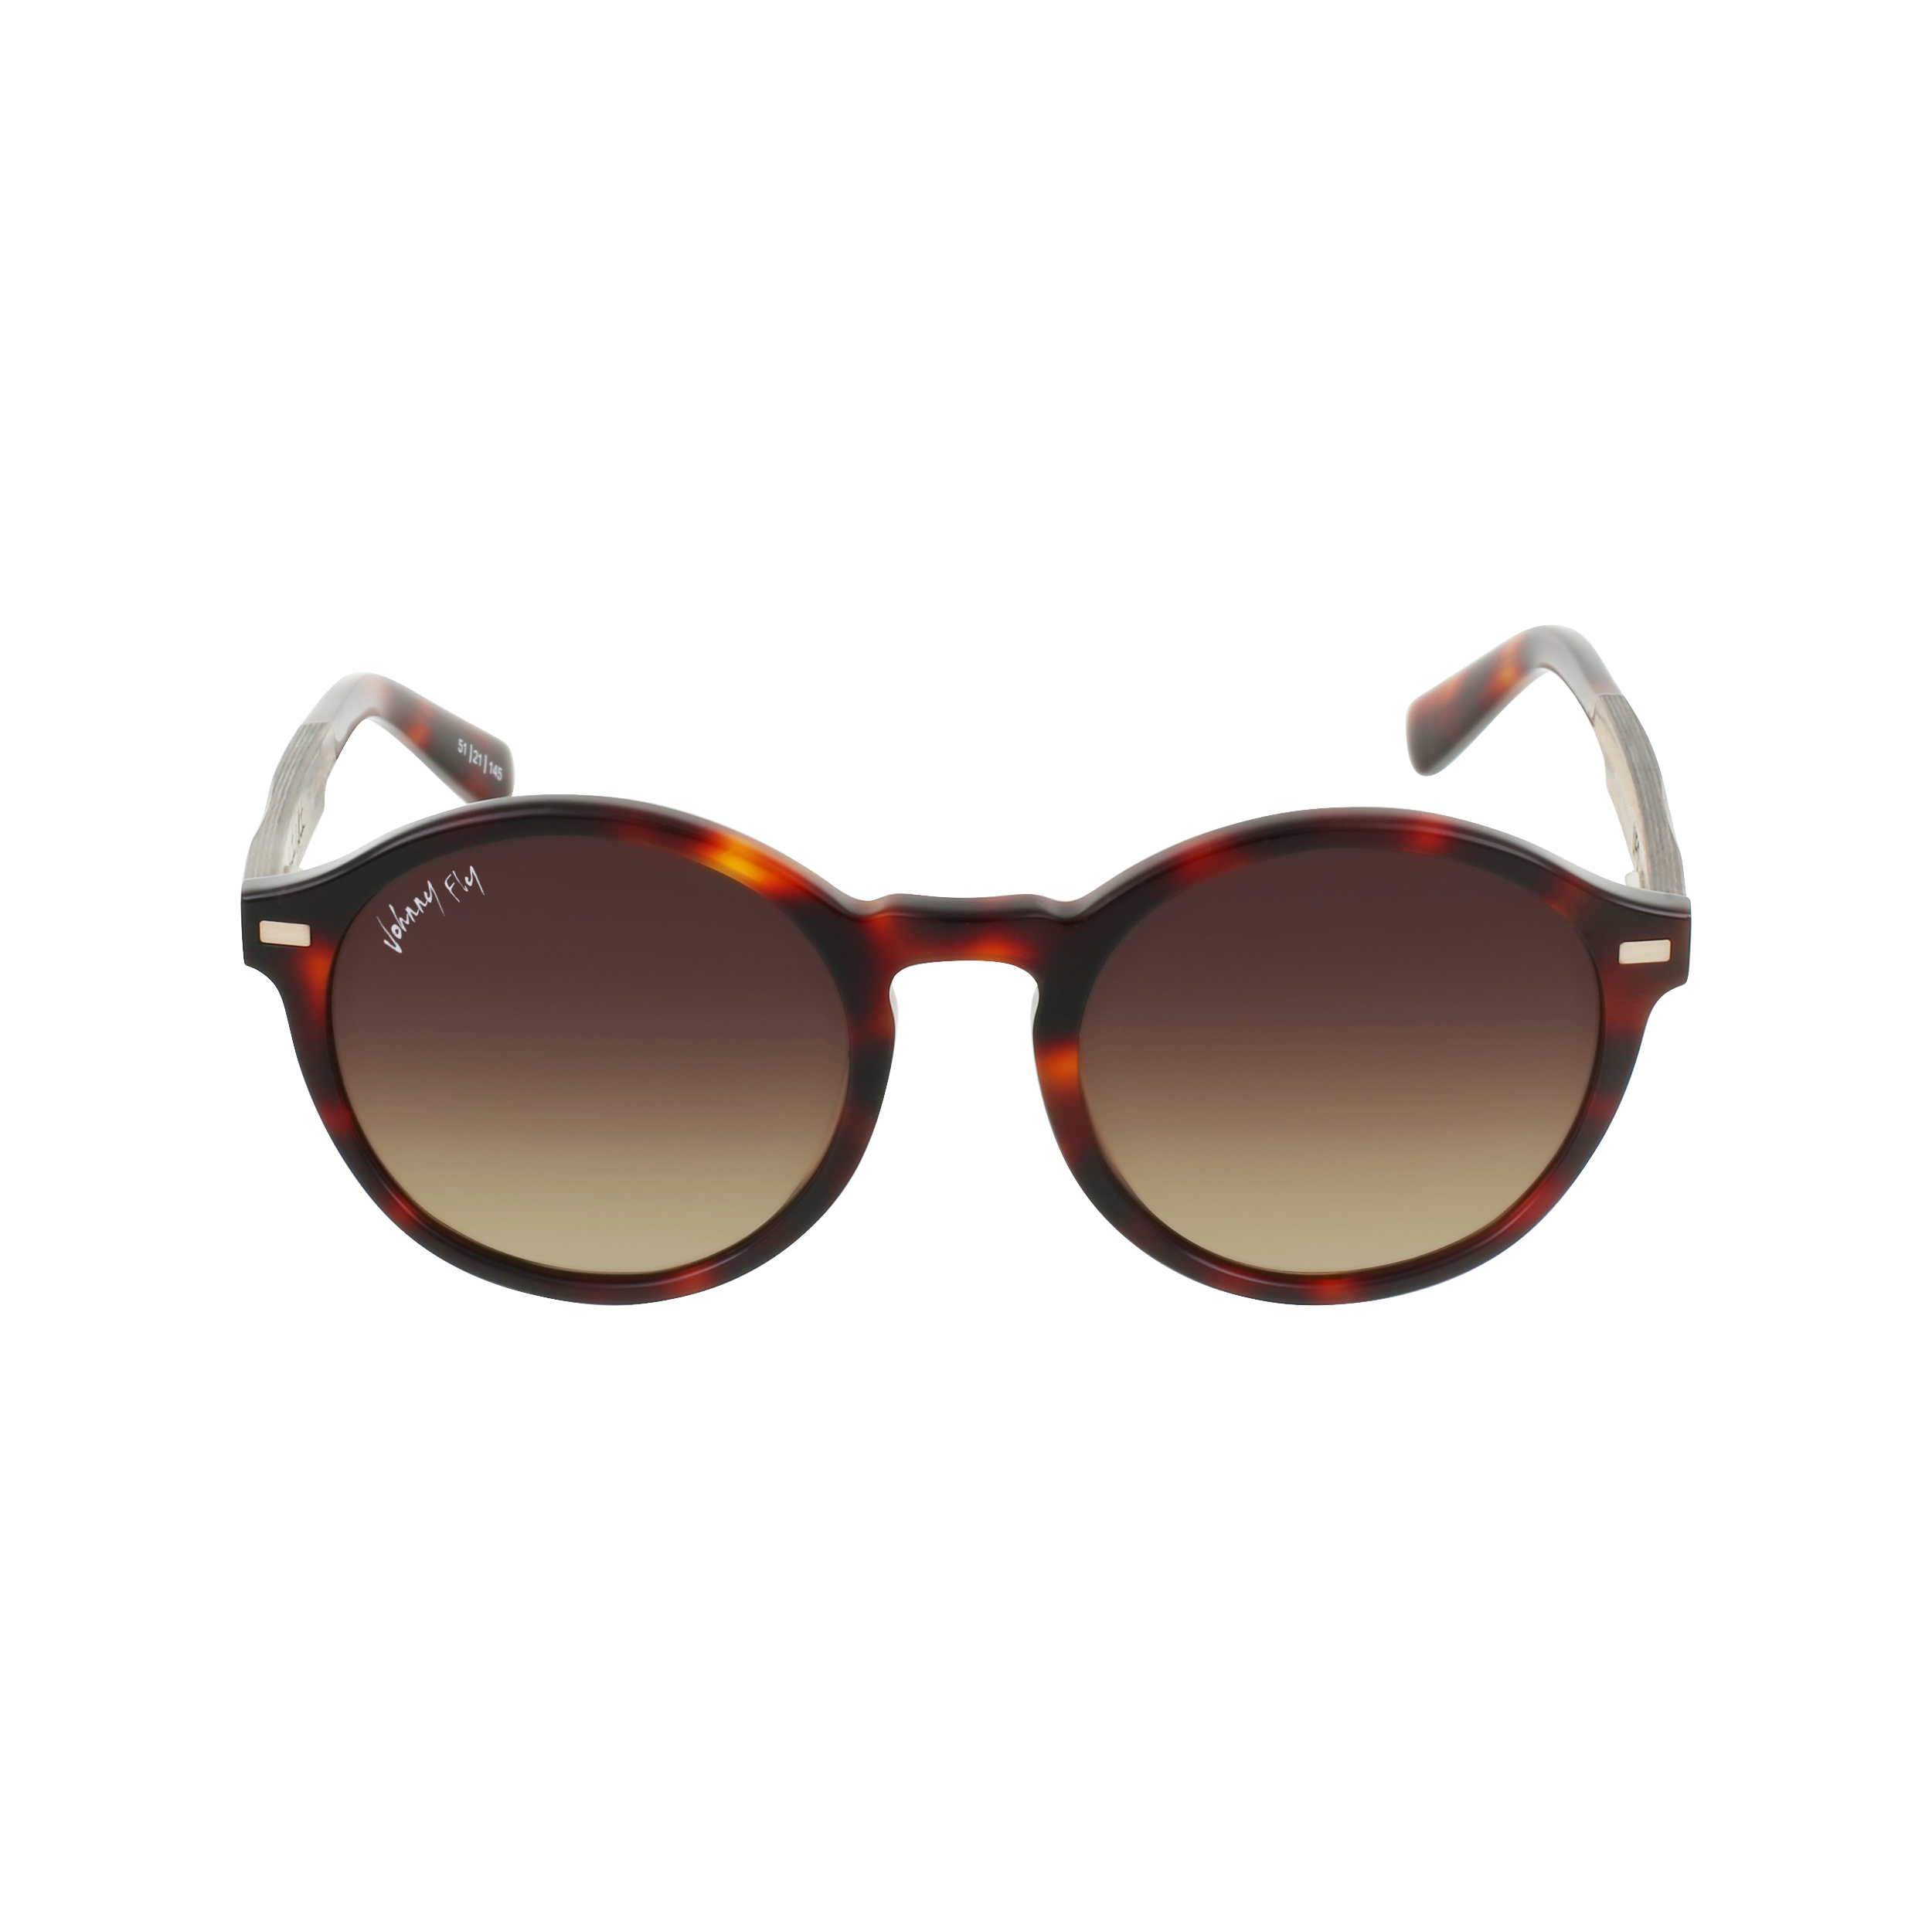 UFO Sunglasses Frame - Classic Tortoise- Johnny Fly | UFO-CTRT-BG126-BGR-EBN | | 